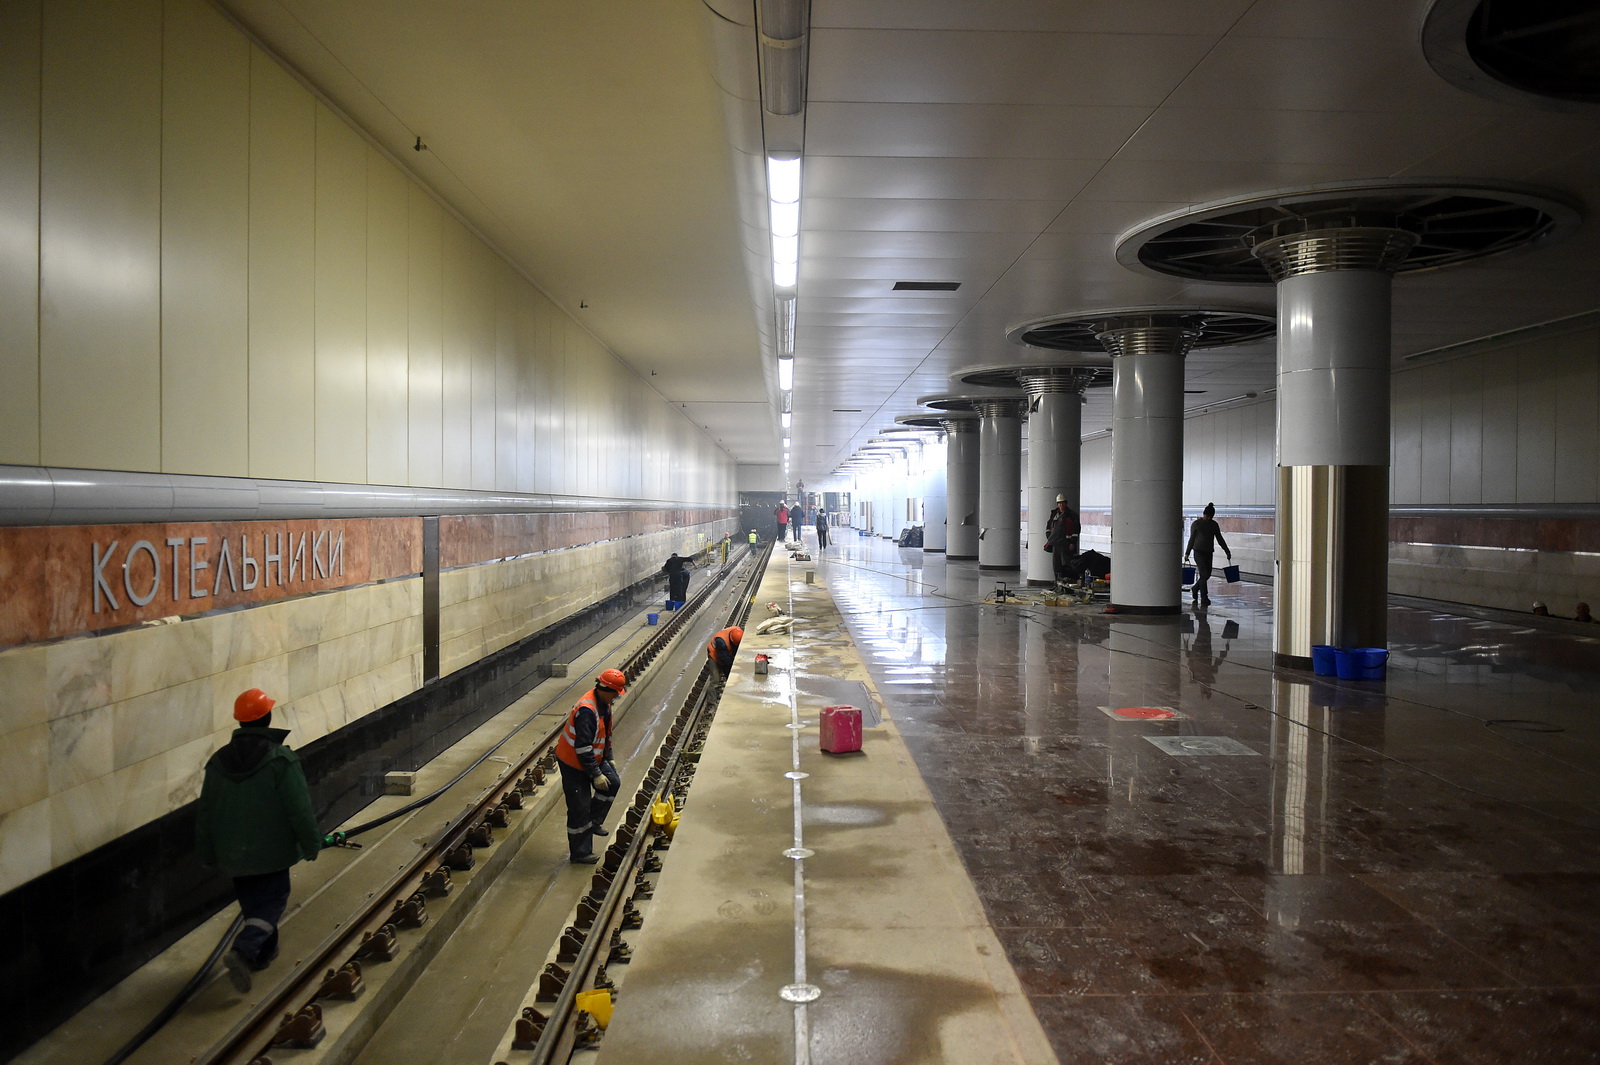 метро котельники в москве